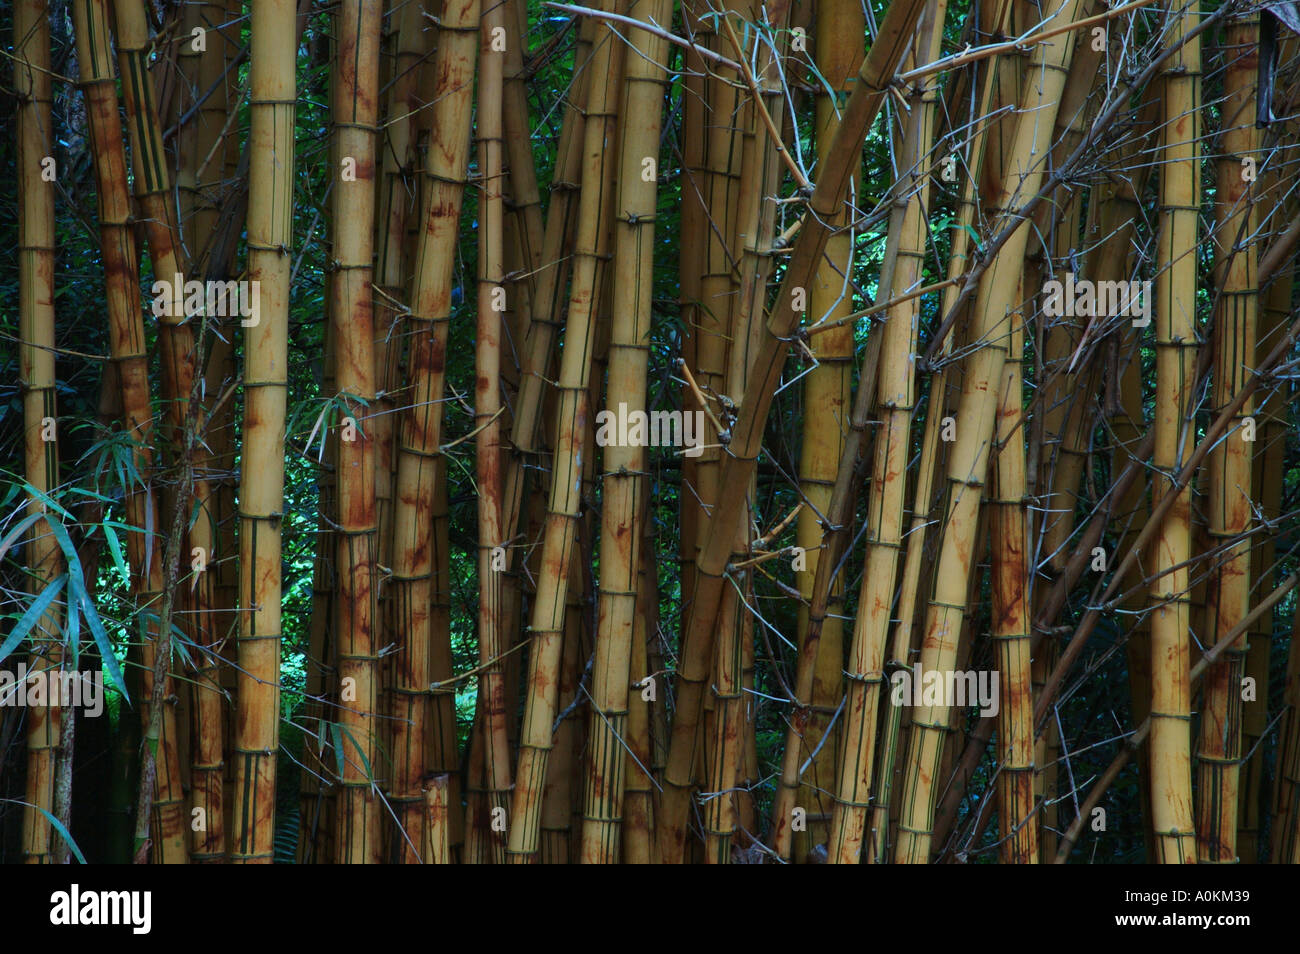 Braun gelbe Bambus Vitatta wissenschaftlichen Name Bambusa Vulgaris Queensaland Australien dsc 9125 Stockfoto